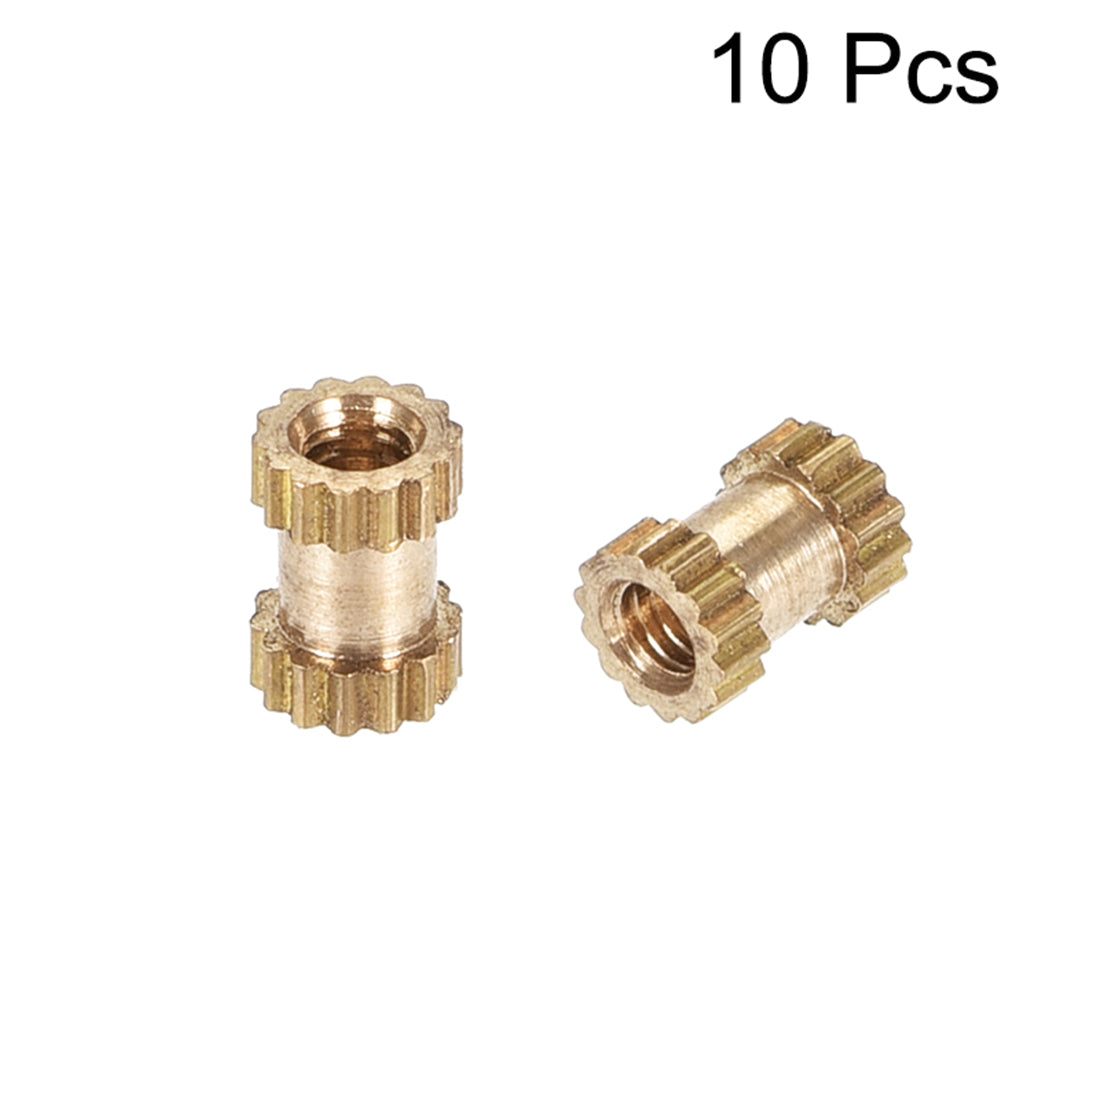 uxcell Uxcell Knurled Insert Nuts, M2 x 5mm(L) x 3.5mm(OD) Female Thread Brass Embedment Assortment Kit, 10 Pcs